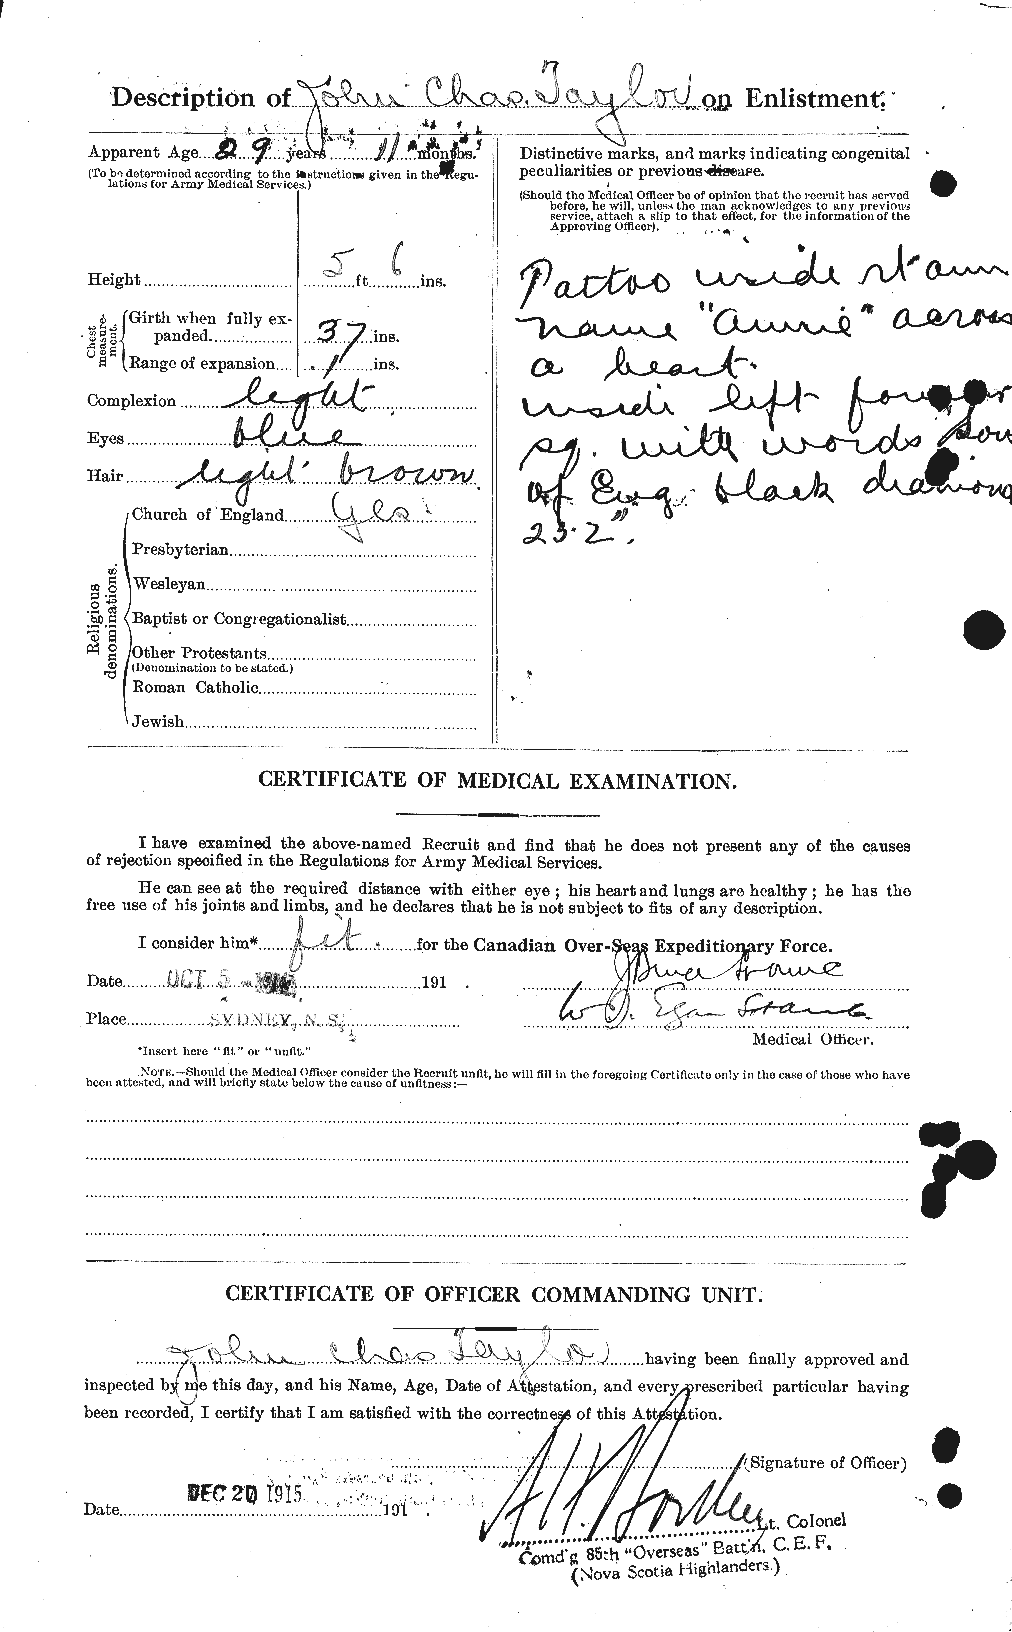 Dossiers du Personnel de la Première Guerre mondiale - CEC 627057b